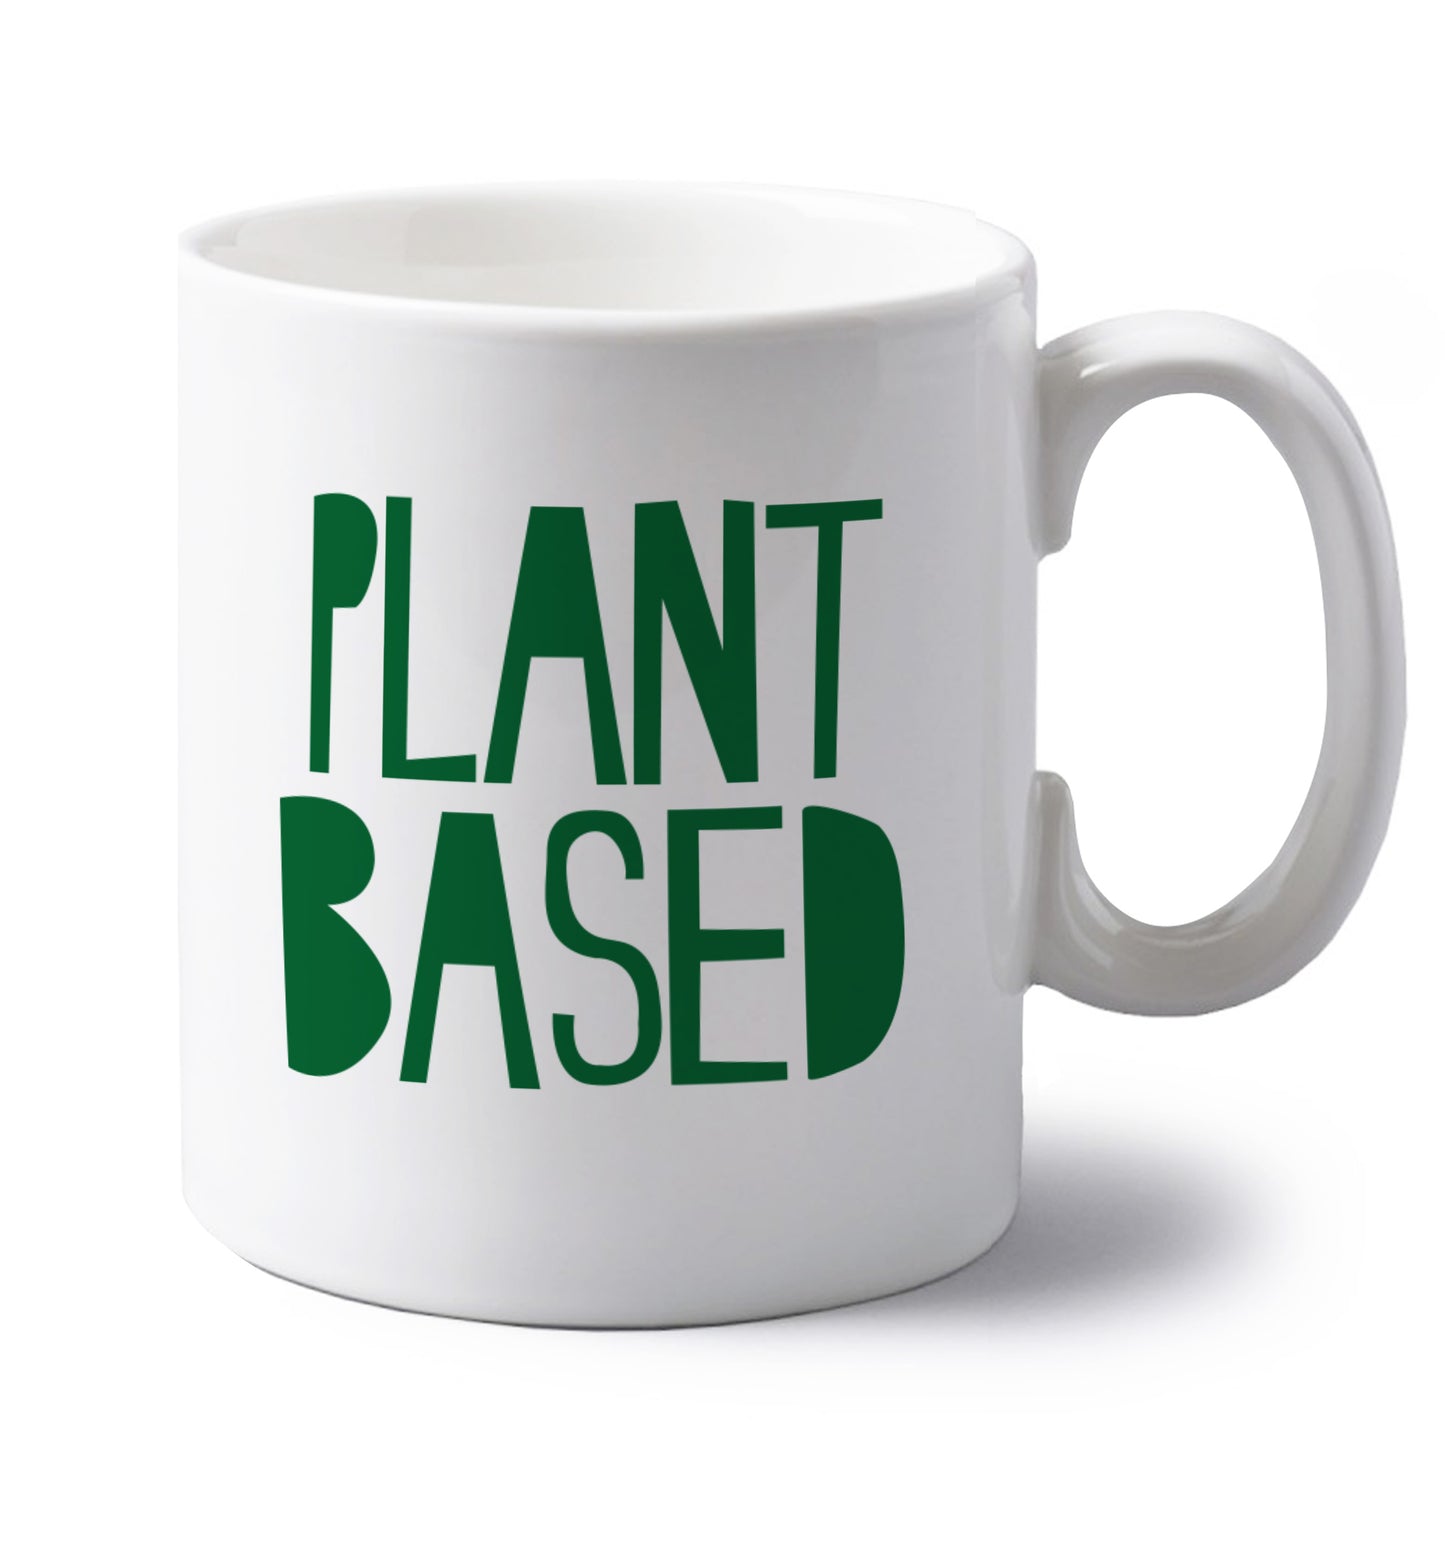 Plant Based left handed white ceramic mug 